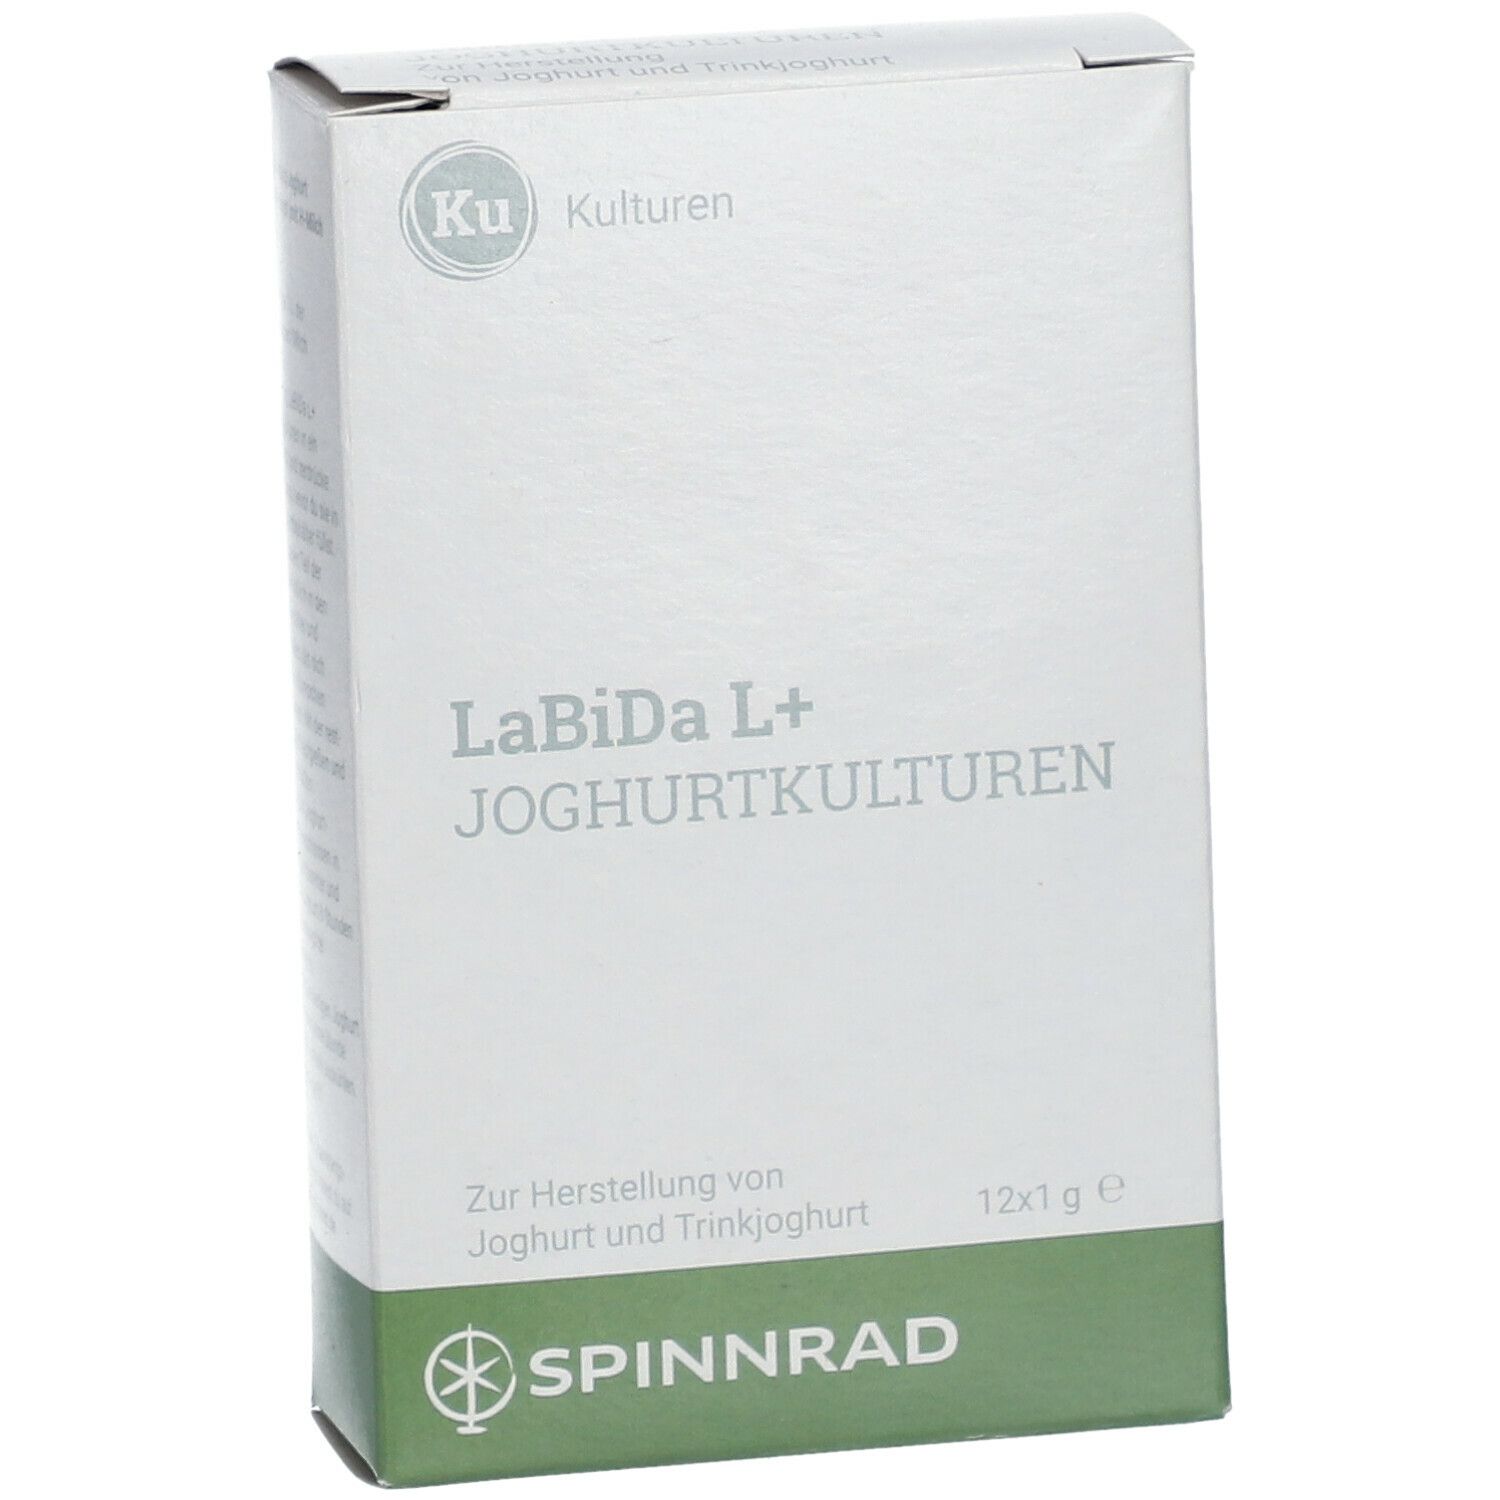 LaBiDa L+ Cultures de yaourt